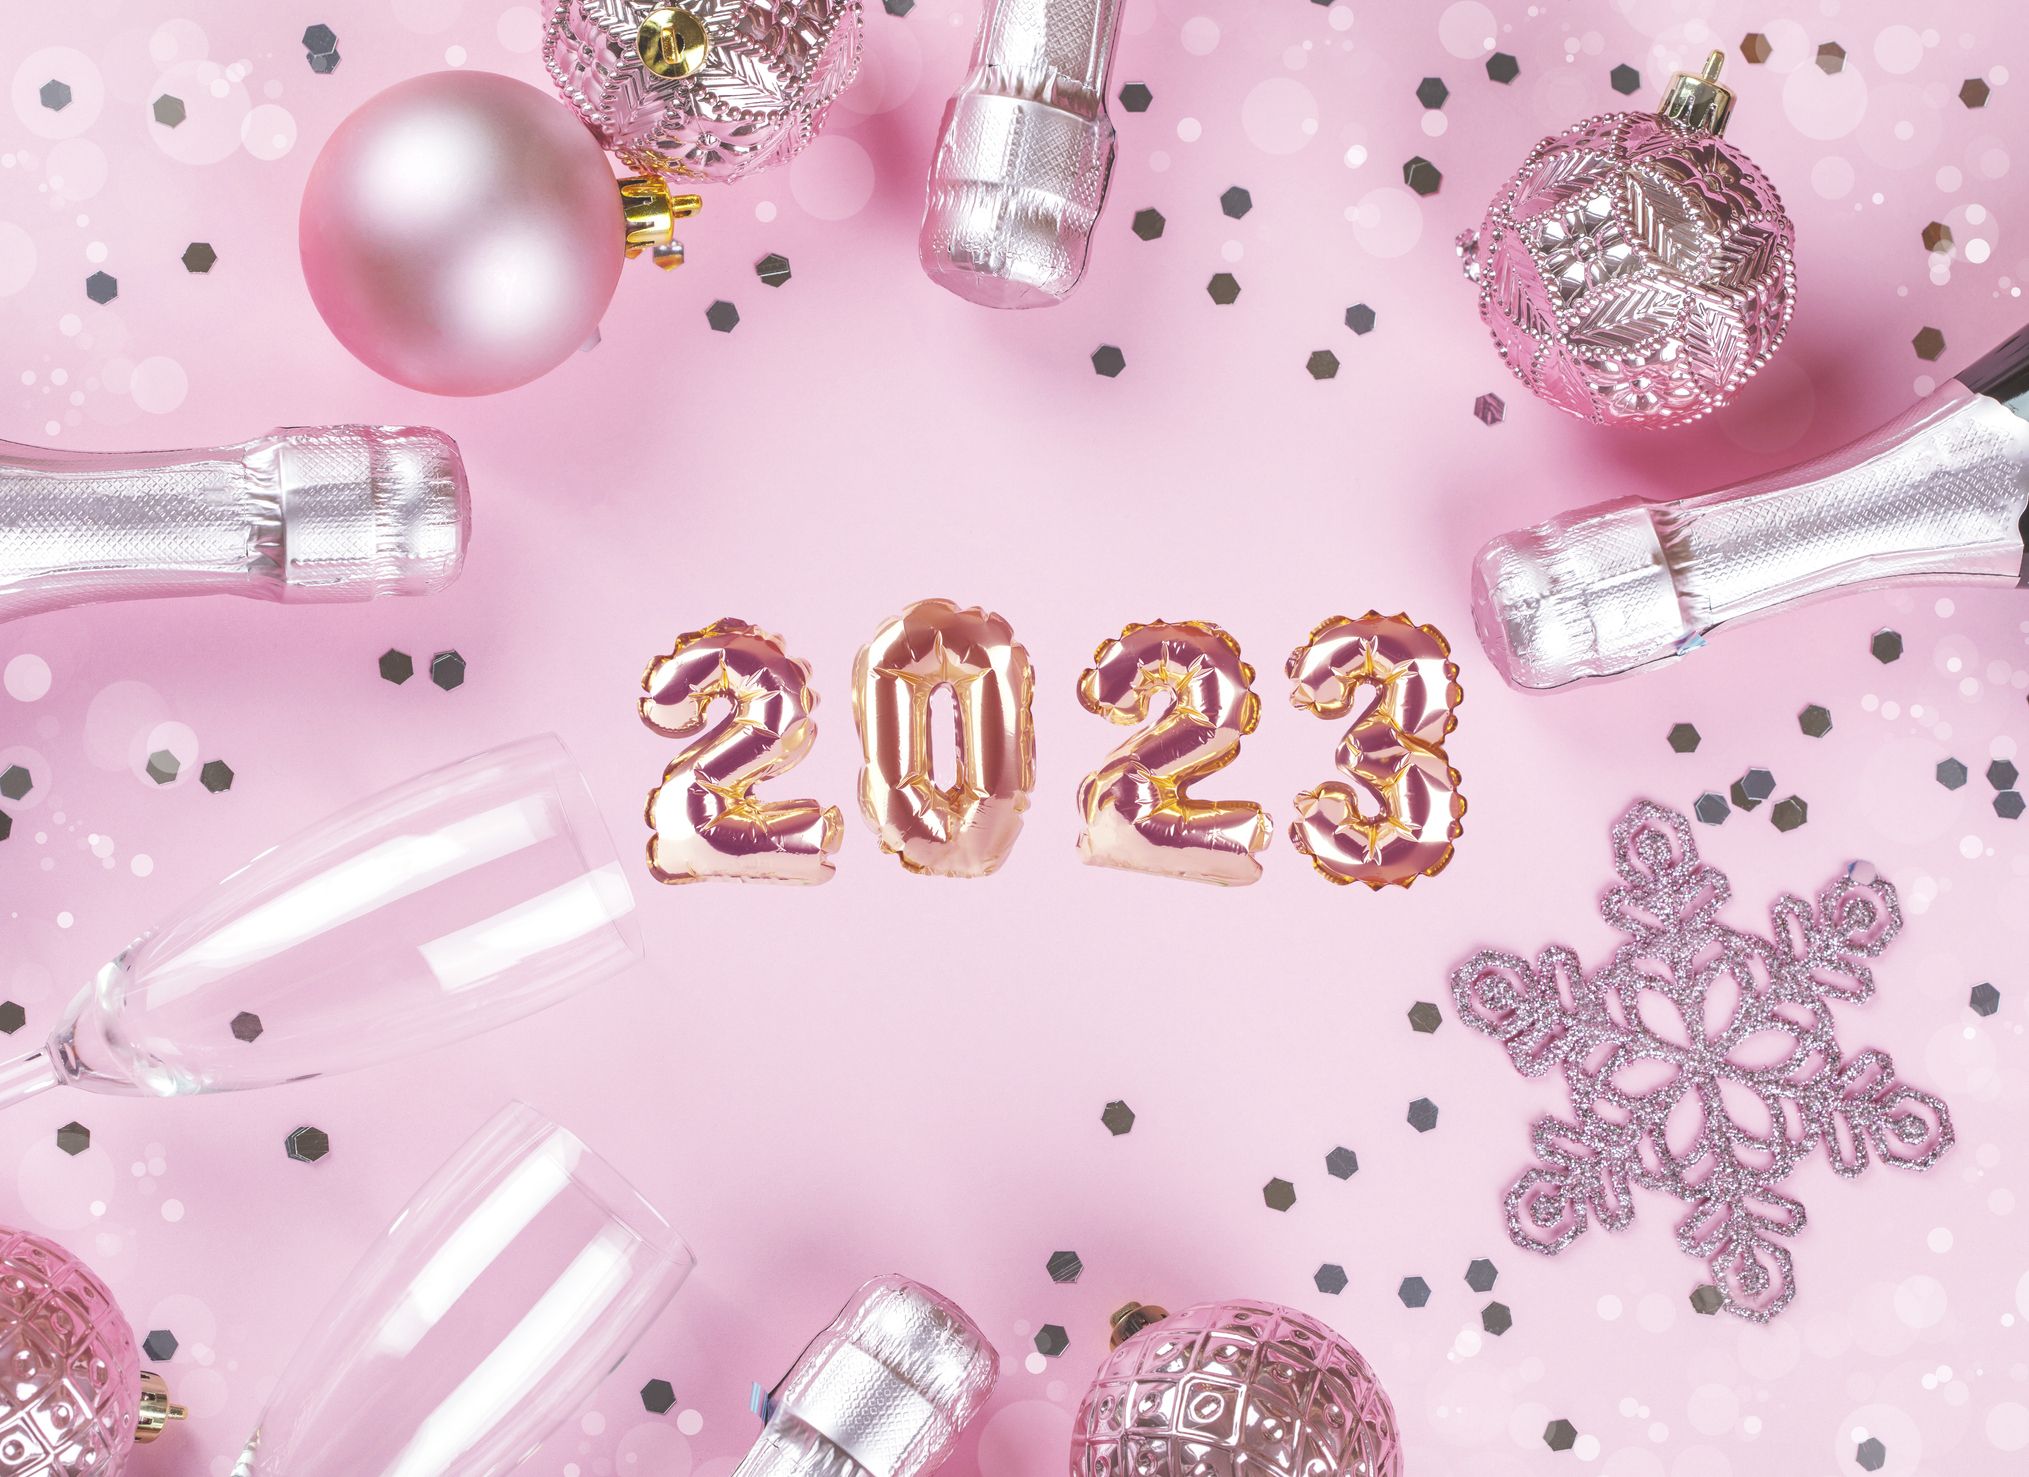 Nền hồng chúc mừng năm mới 2024 với số trắng trên hoa hồng: Đón chào năm mới 2024 với một nền hồng tuyệt đẹp và đầy ý nghĩa. Hình ảnh với những số trắng trên hoa hồng sẽ khiến cho không gian của bạn tràn đầy sự ấm áp, hạnh phúc và niềm vui.